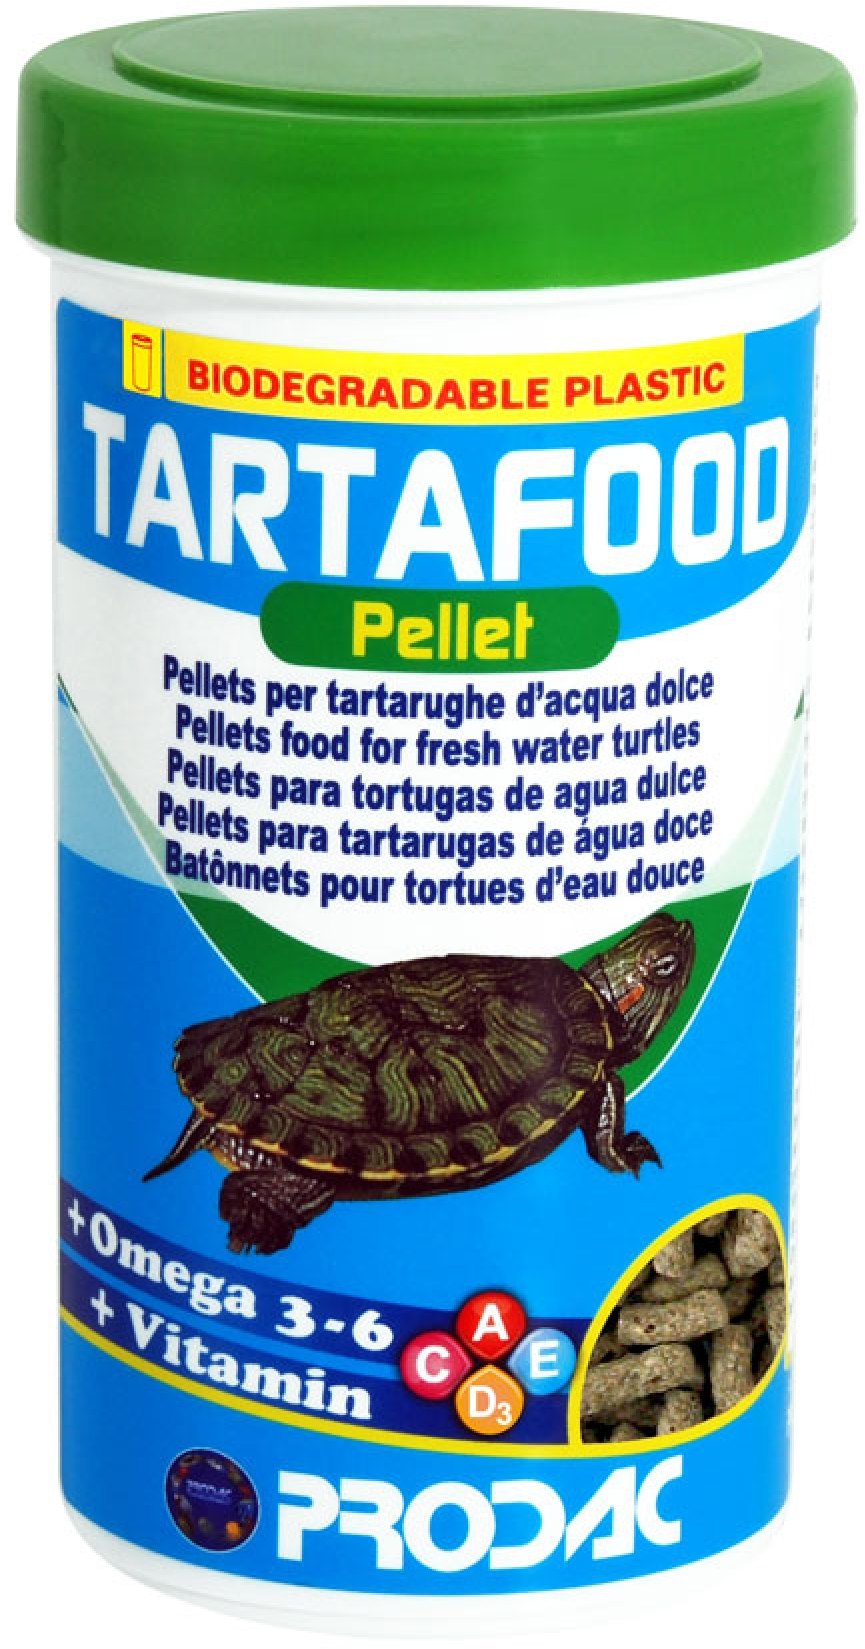 PRODAC Tartafood Hrană pentru broaşte ţestoase